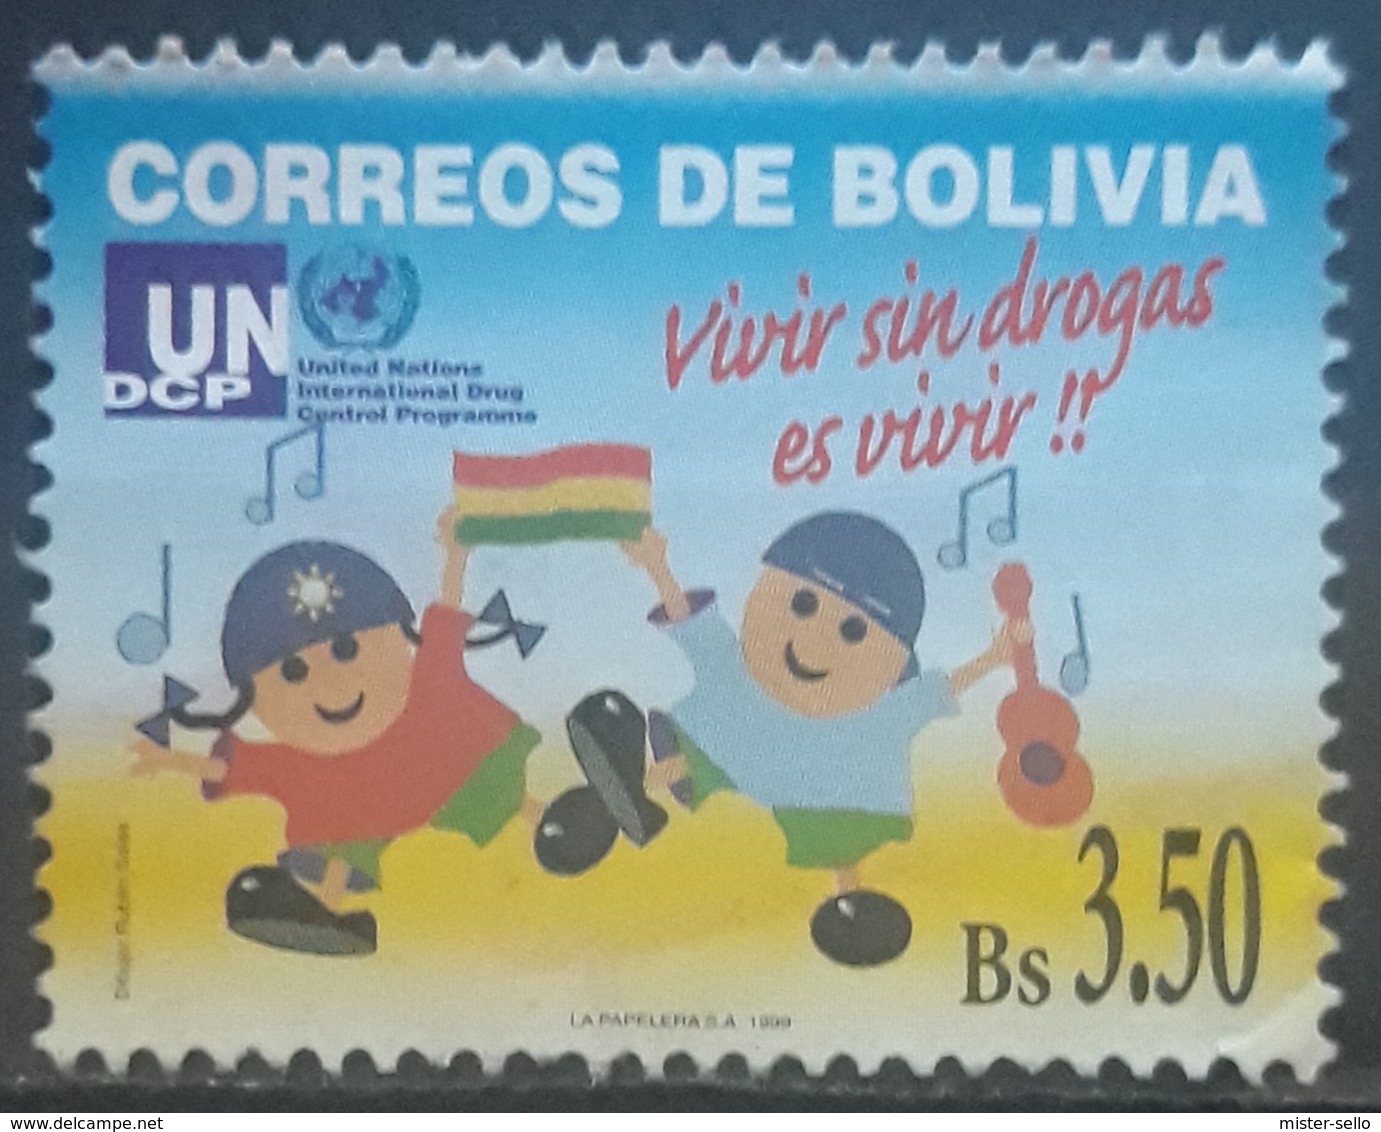 BOLIVIA 1999 Anti-drugs Campaign. USADO - USED. - Bolivia